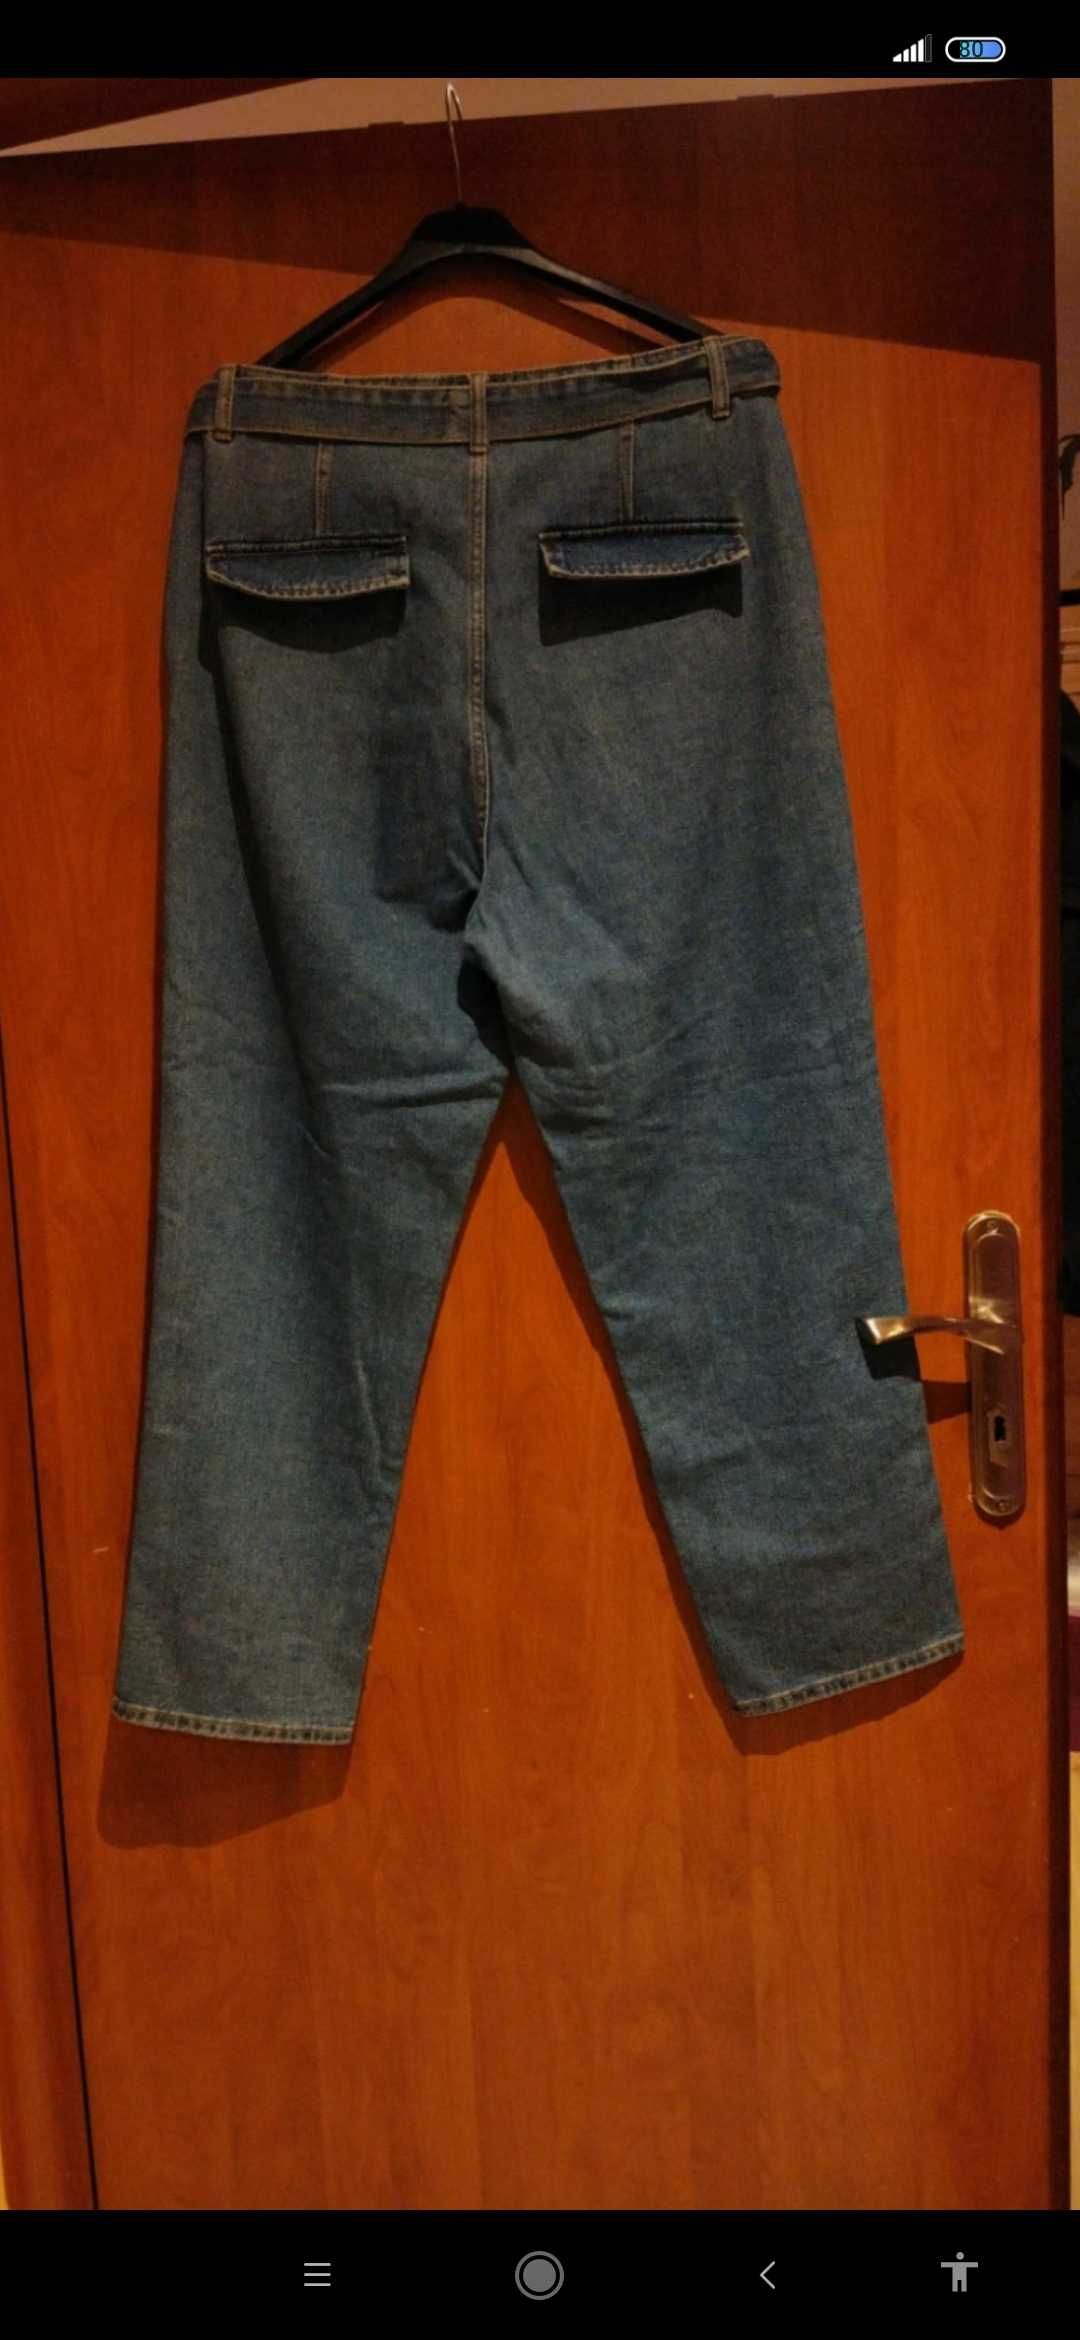 Spodnie dżinsowe XL,z paskiem dżinsowym.